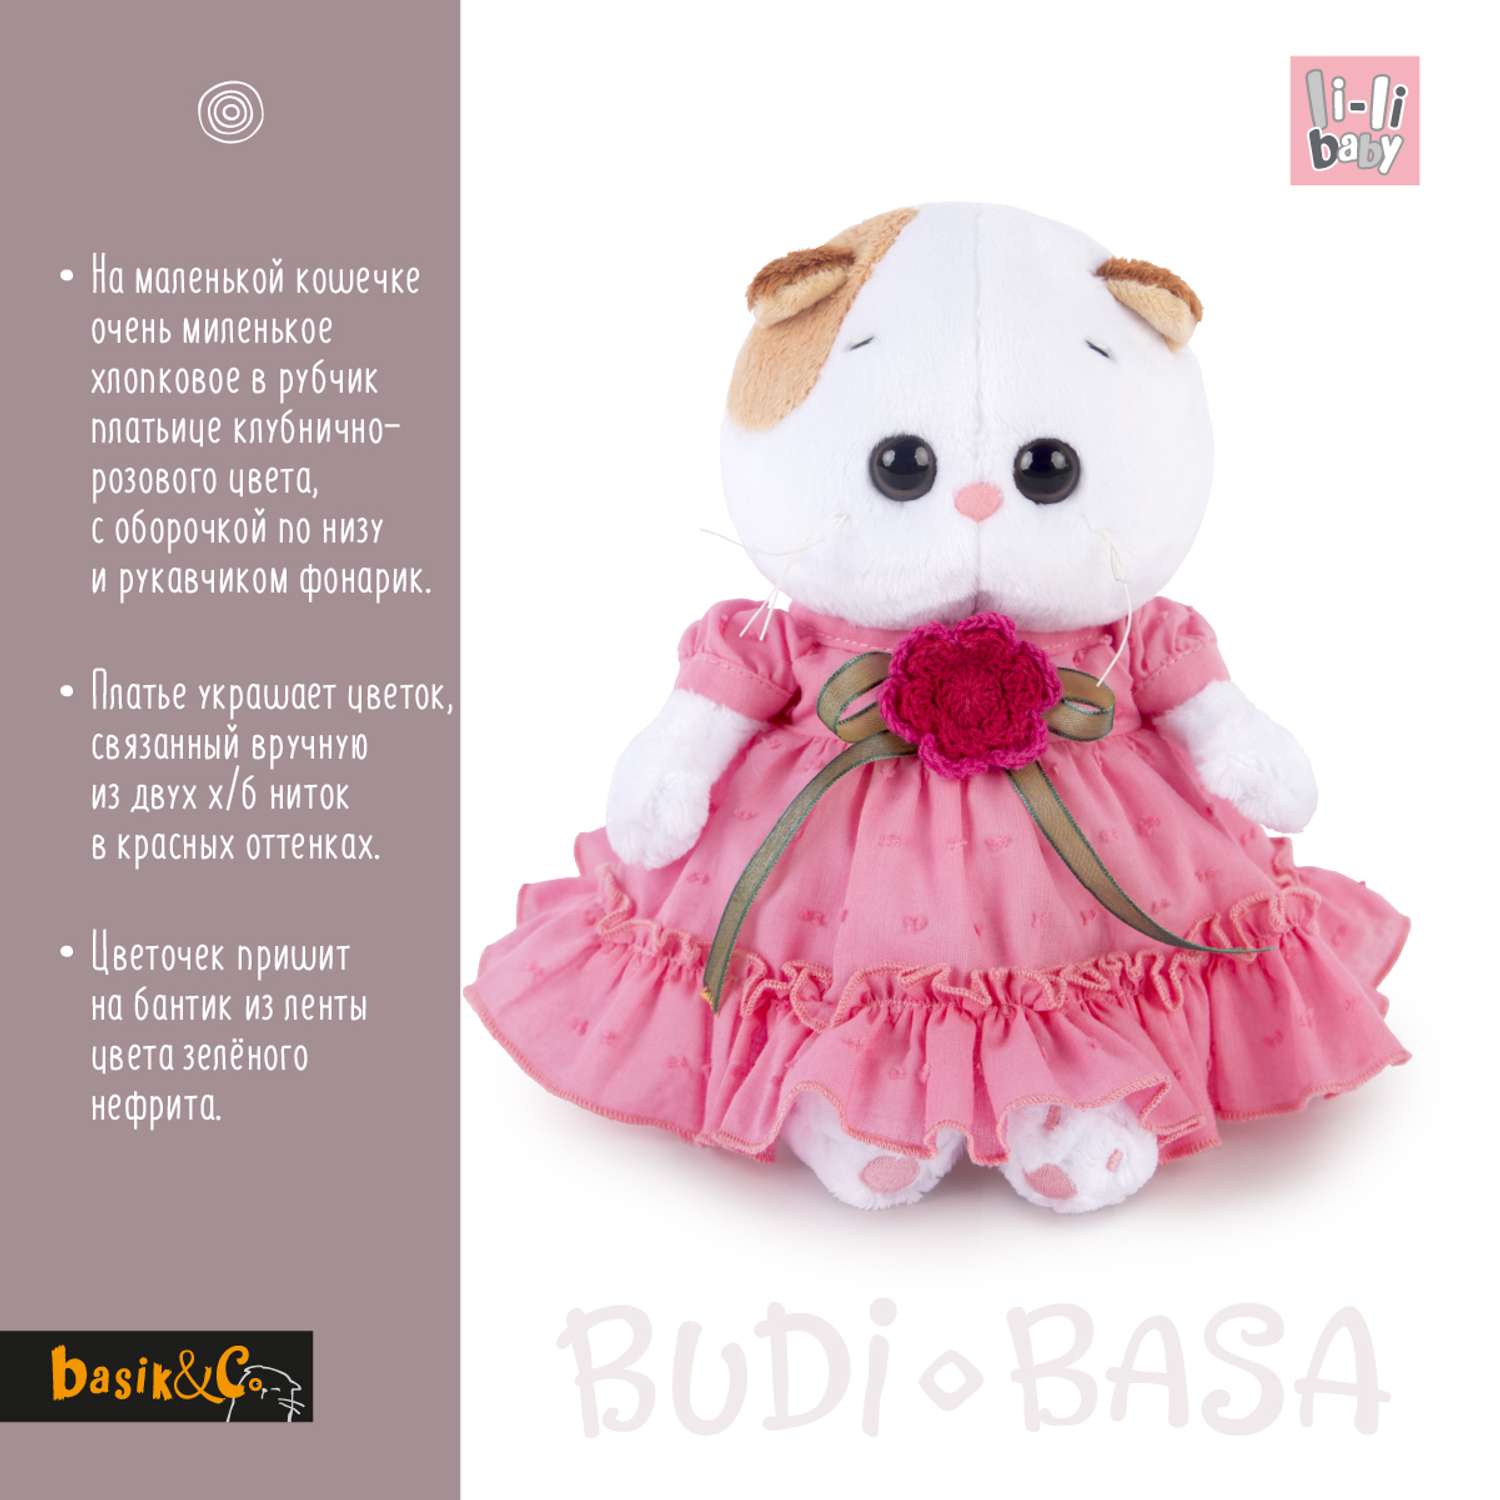 Мягкая игрушка BUDI BASA Ли-Ли BABY в платье с вязаным цветочком 20 см LB-013 - фото 3